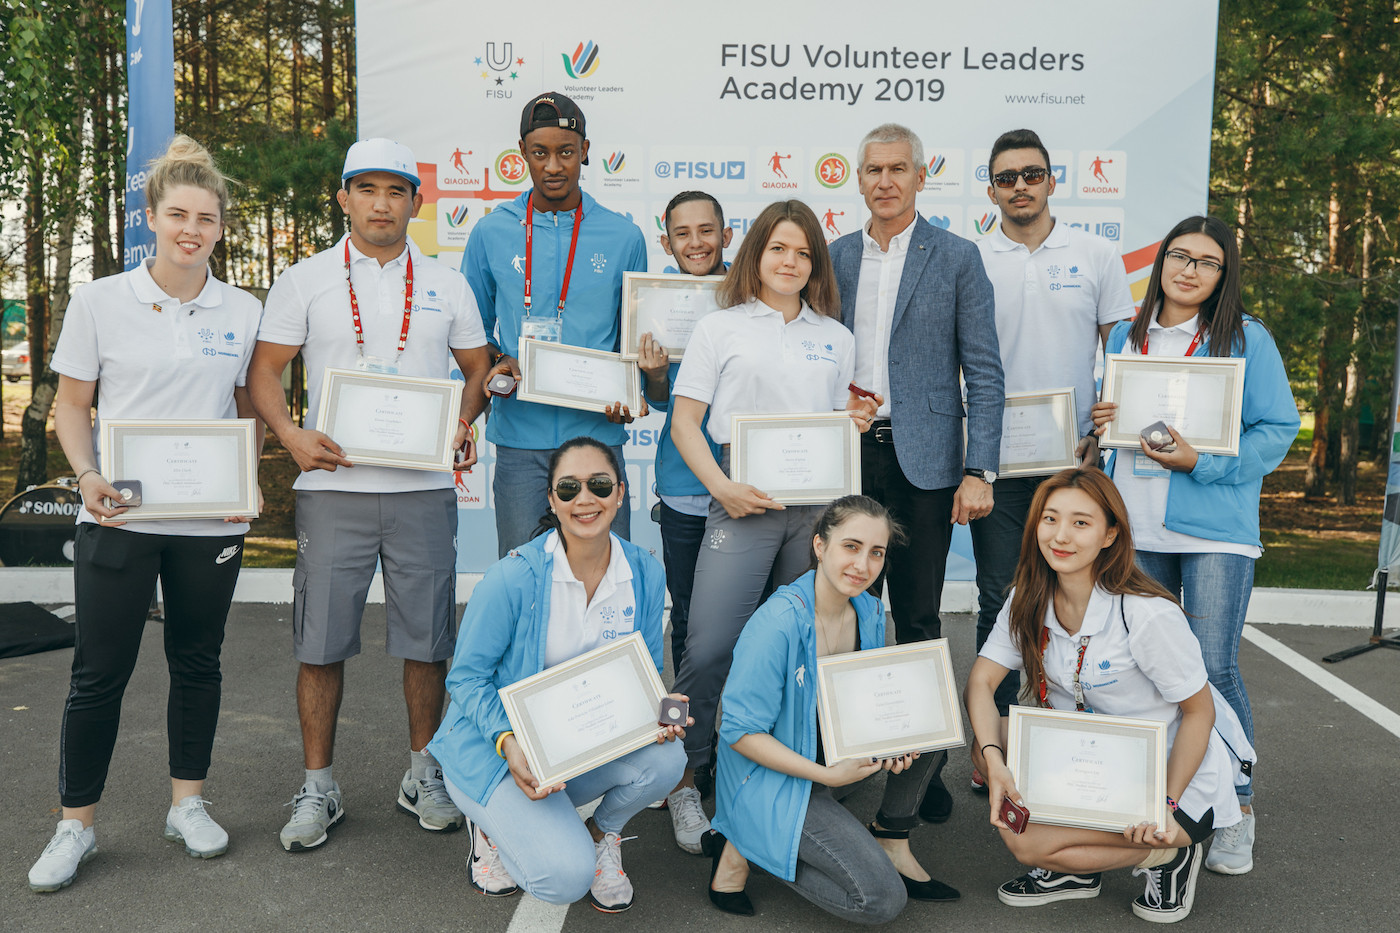 FISU President congratulates participants at Volunteer Leaders Academy